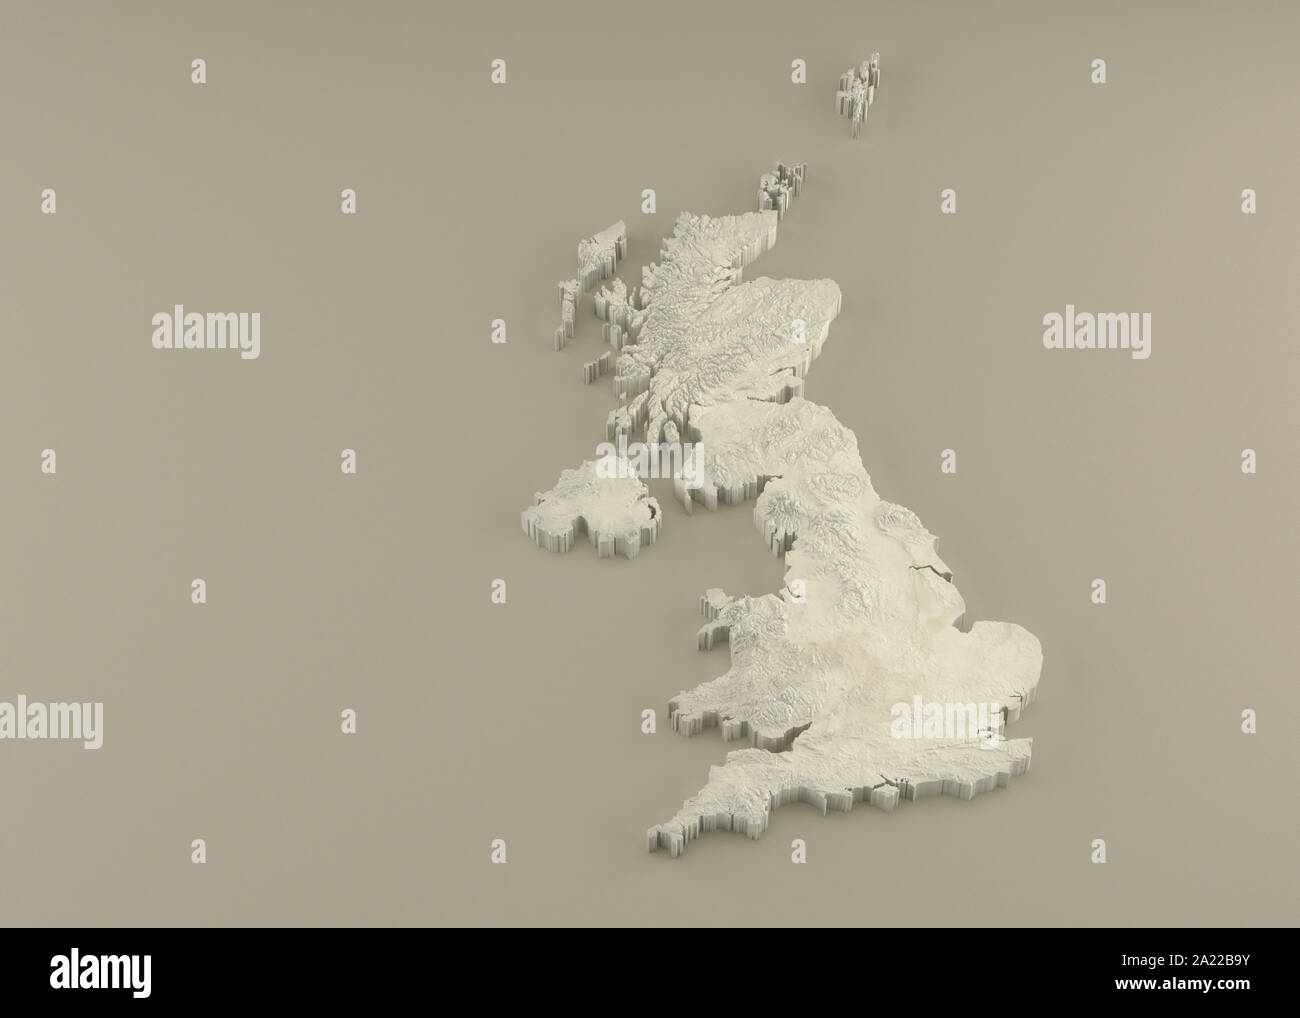 Estruso 3D carta politica del Regno Unito in rilievo come la scultura in marmo di una luce sfondo beige Foto Stock